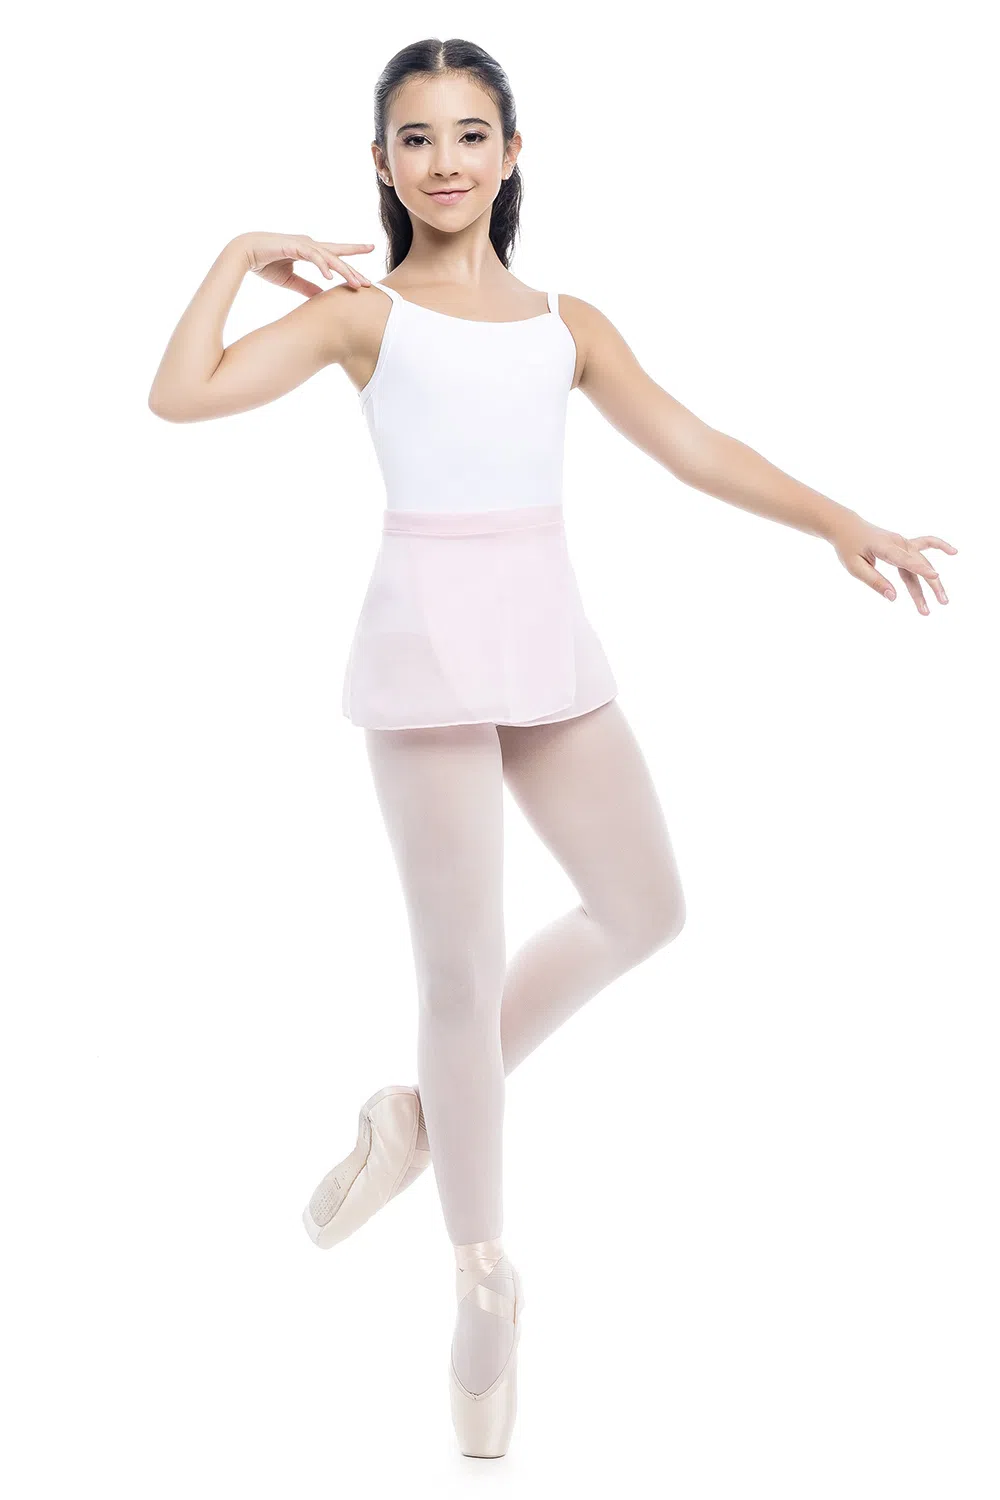 Ballerina tights! : r/crossdressing